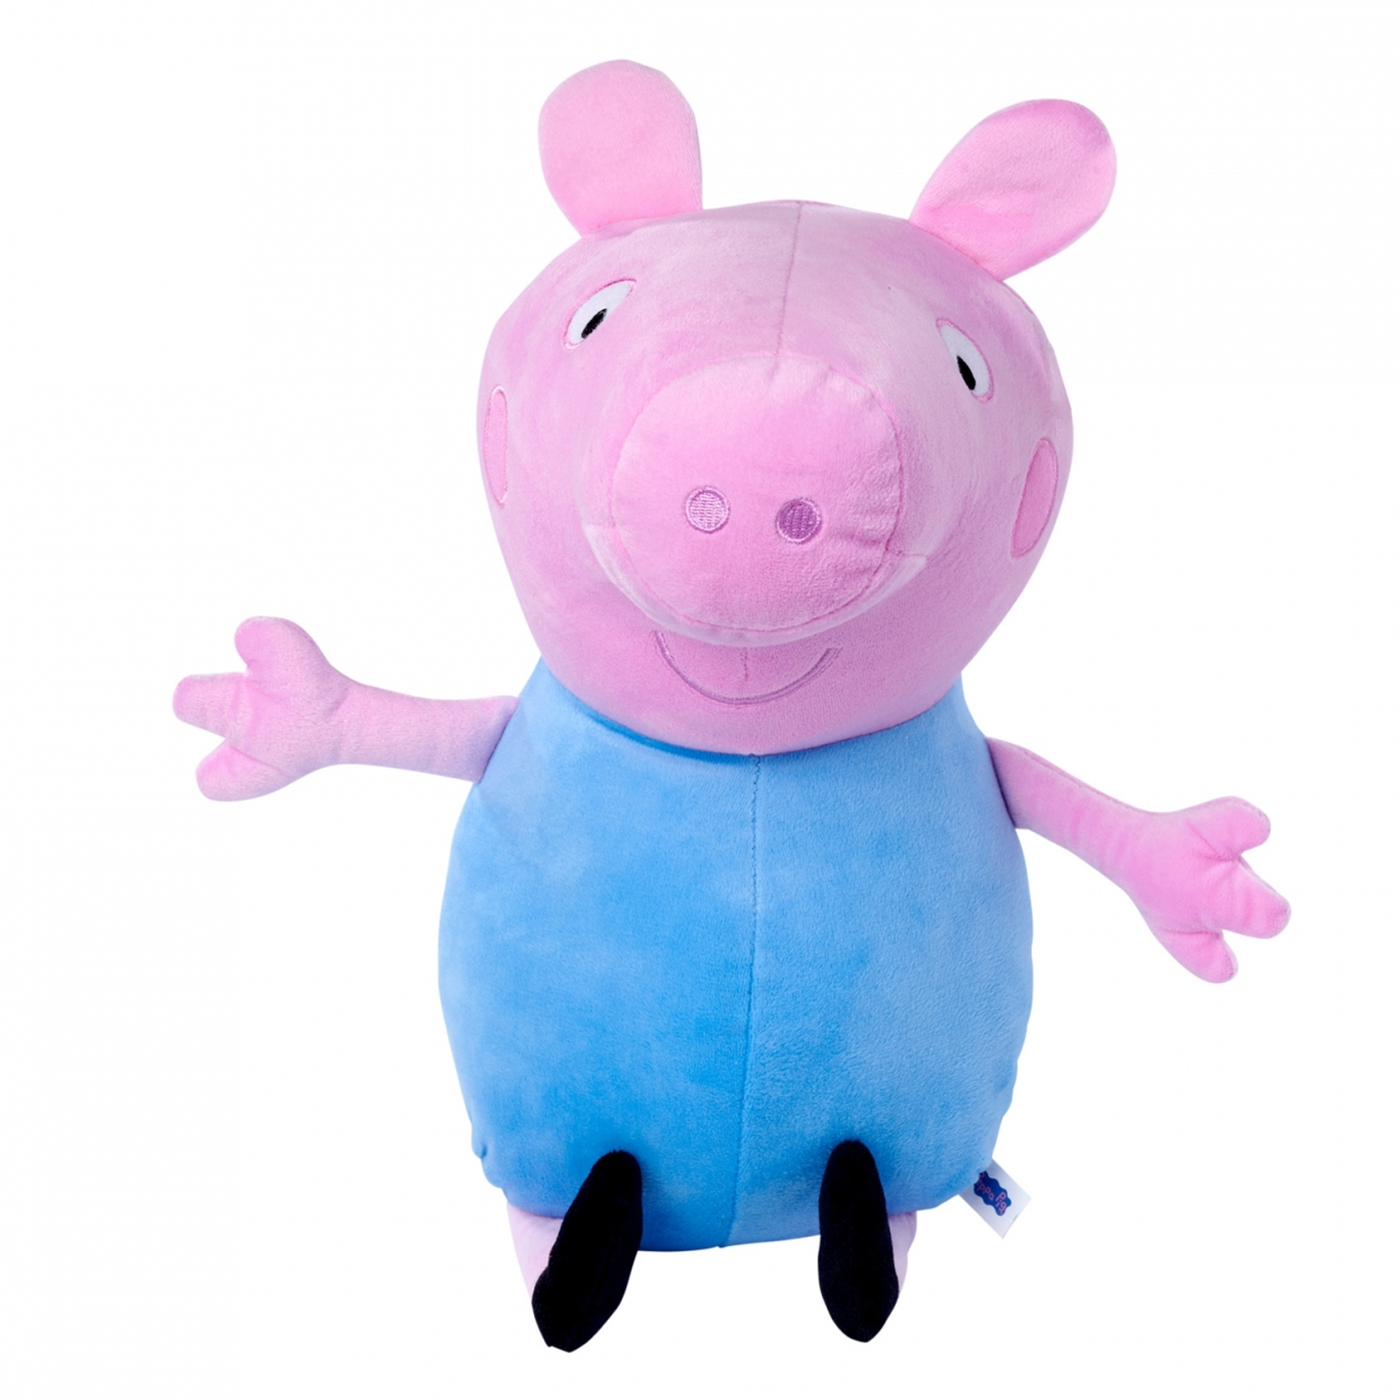  Peppa Pig Pelüş Ailesi - George Pig